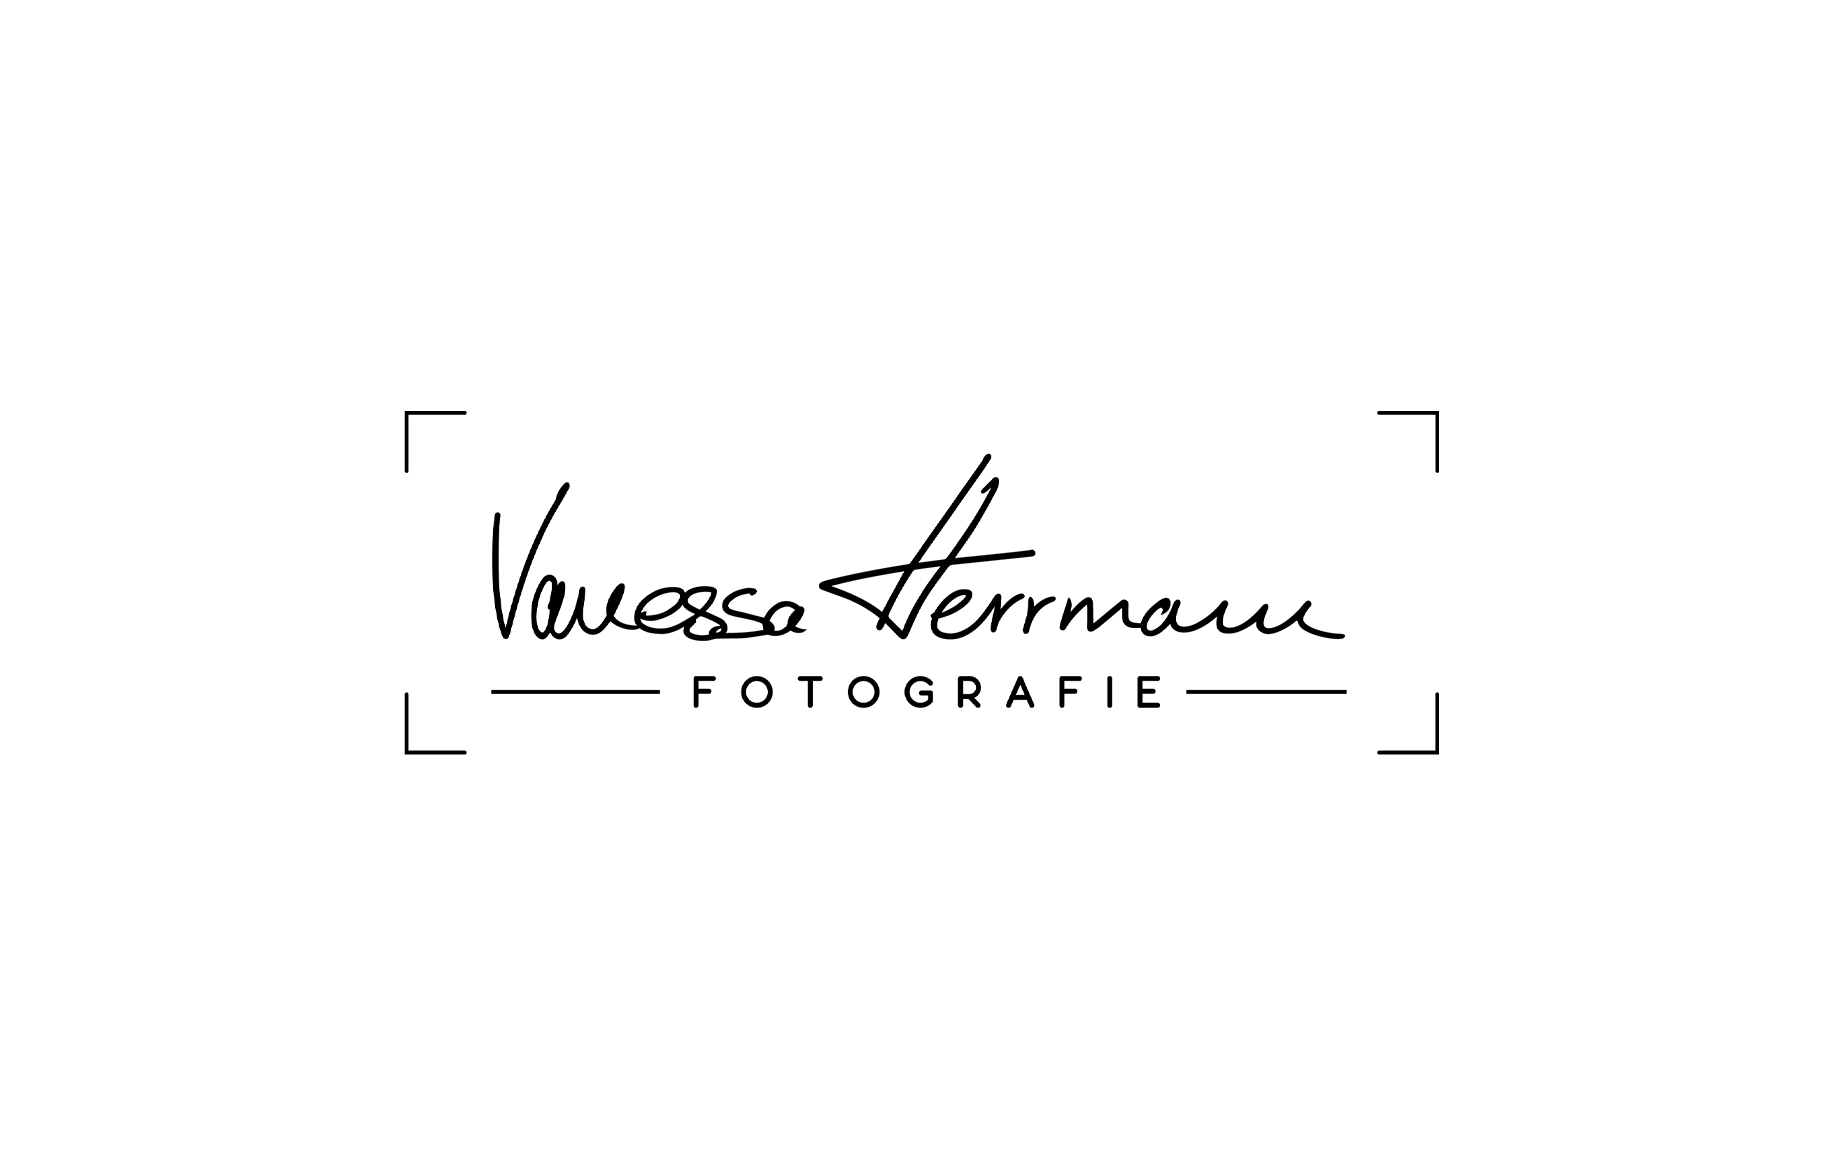 Vanessa Herrmann: Portraitfotografie